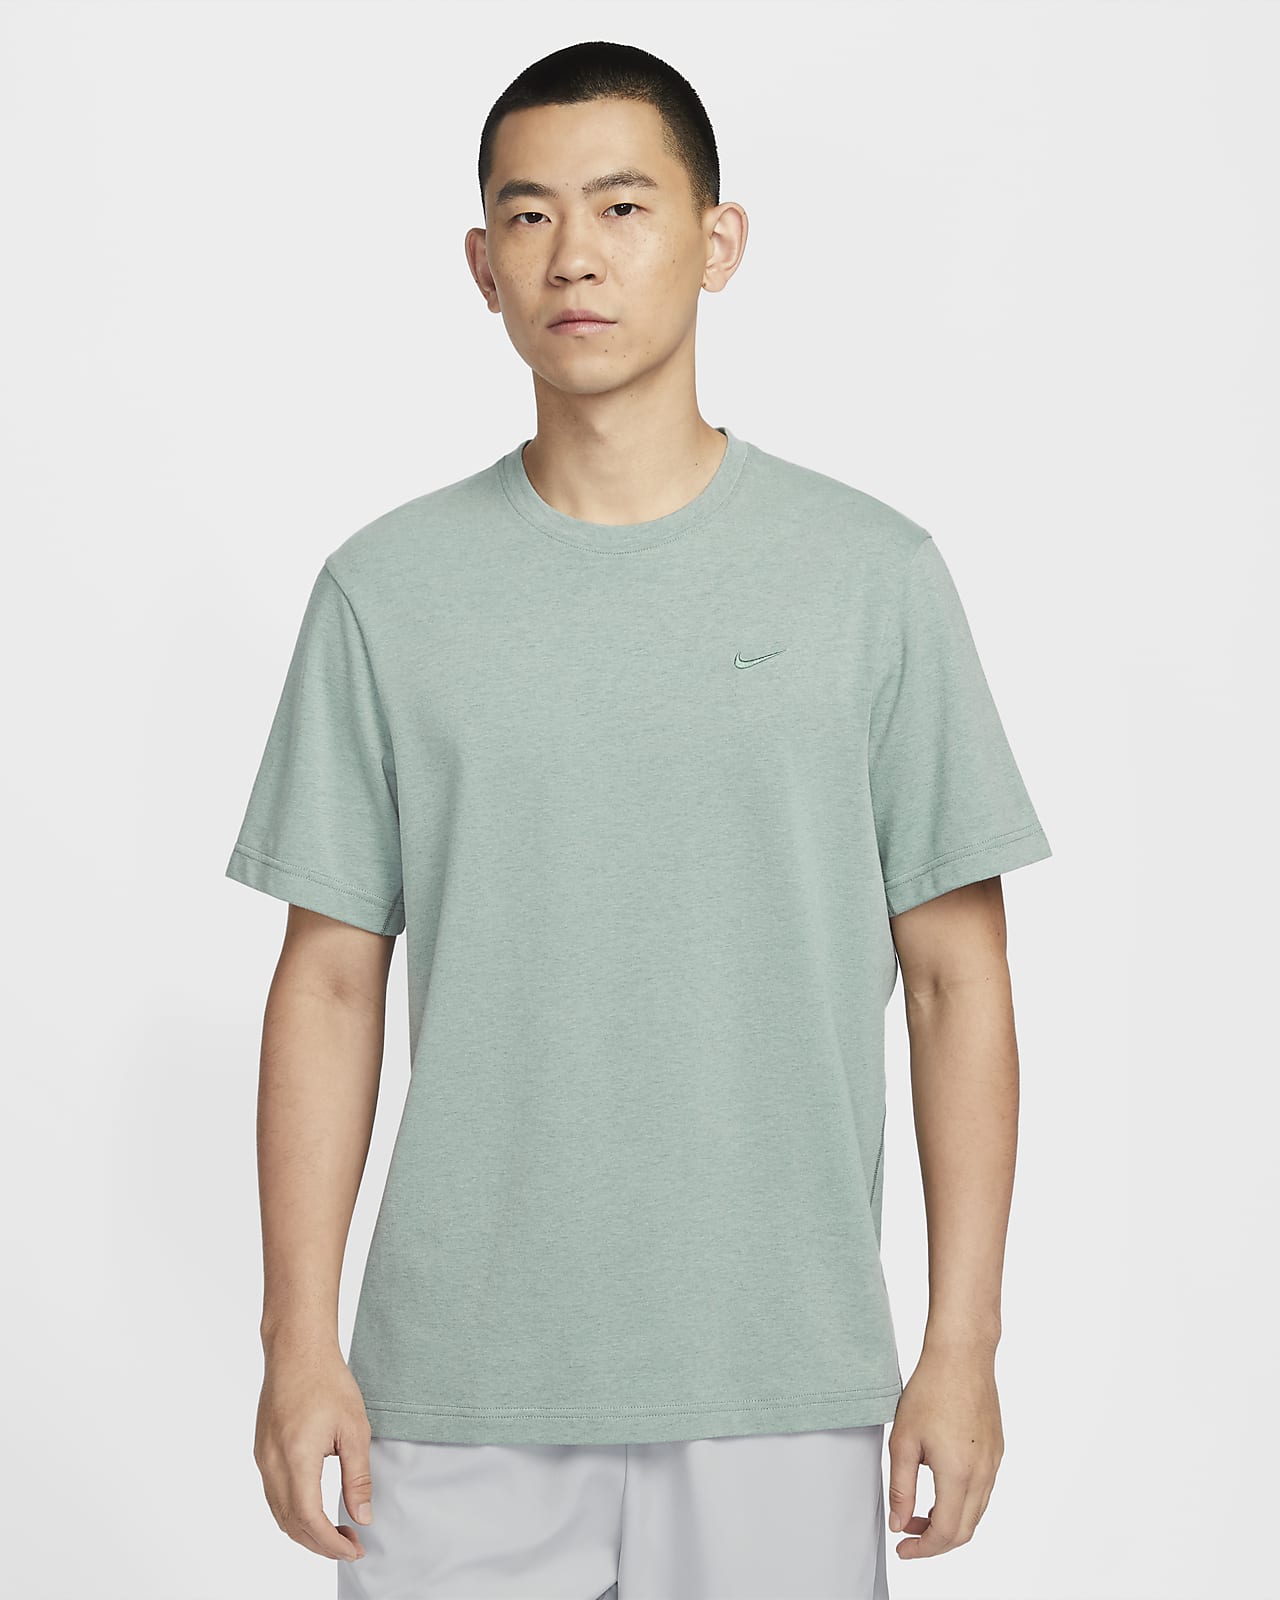 나이키 드라이 핏 프라이머리 남성 트레이닝 티셔츠